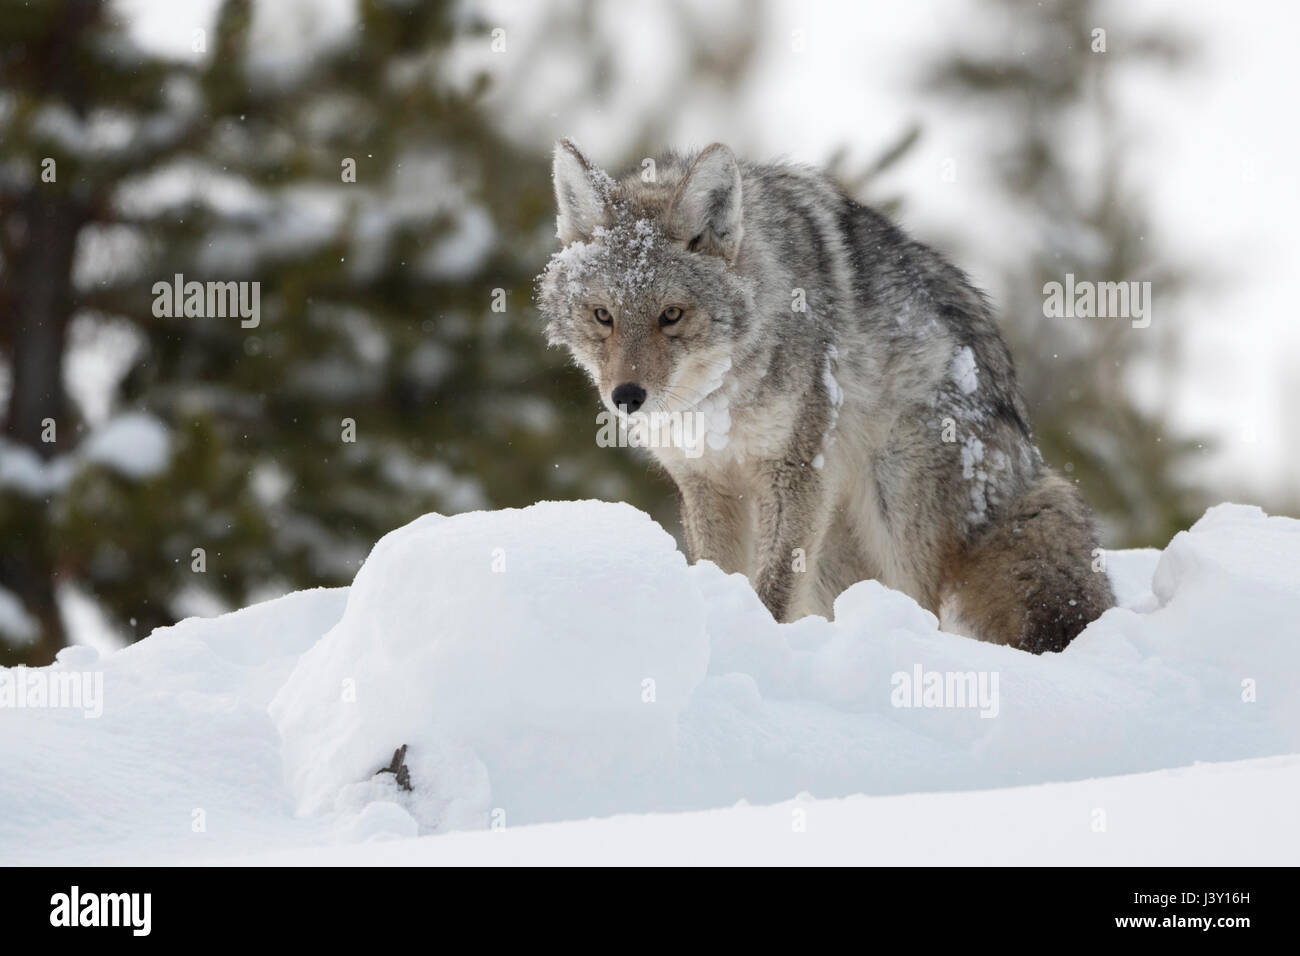 Le Coyote (Canis latrans ) en hiver, de la neige profonde, assis, debout, avec la neige et la glace en claggy sa fourrure, a l'air drôle, NP Yellowstone, Wyoming, USA. Banque D'Images